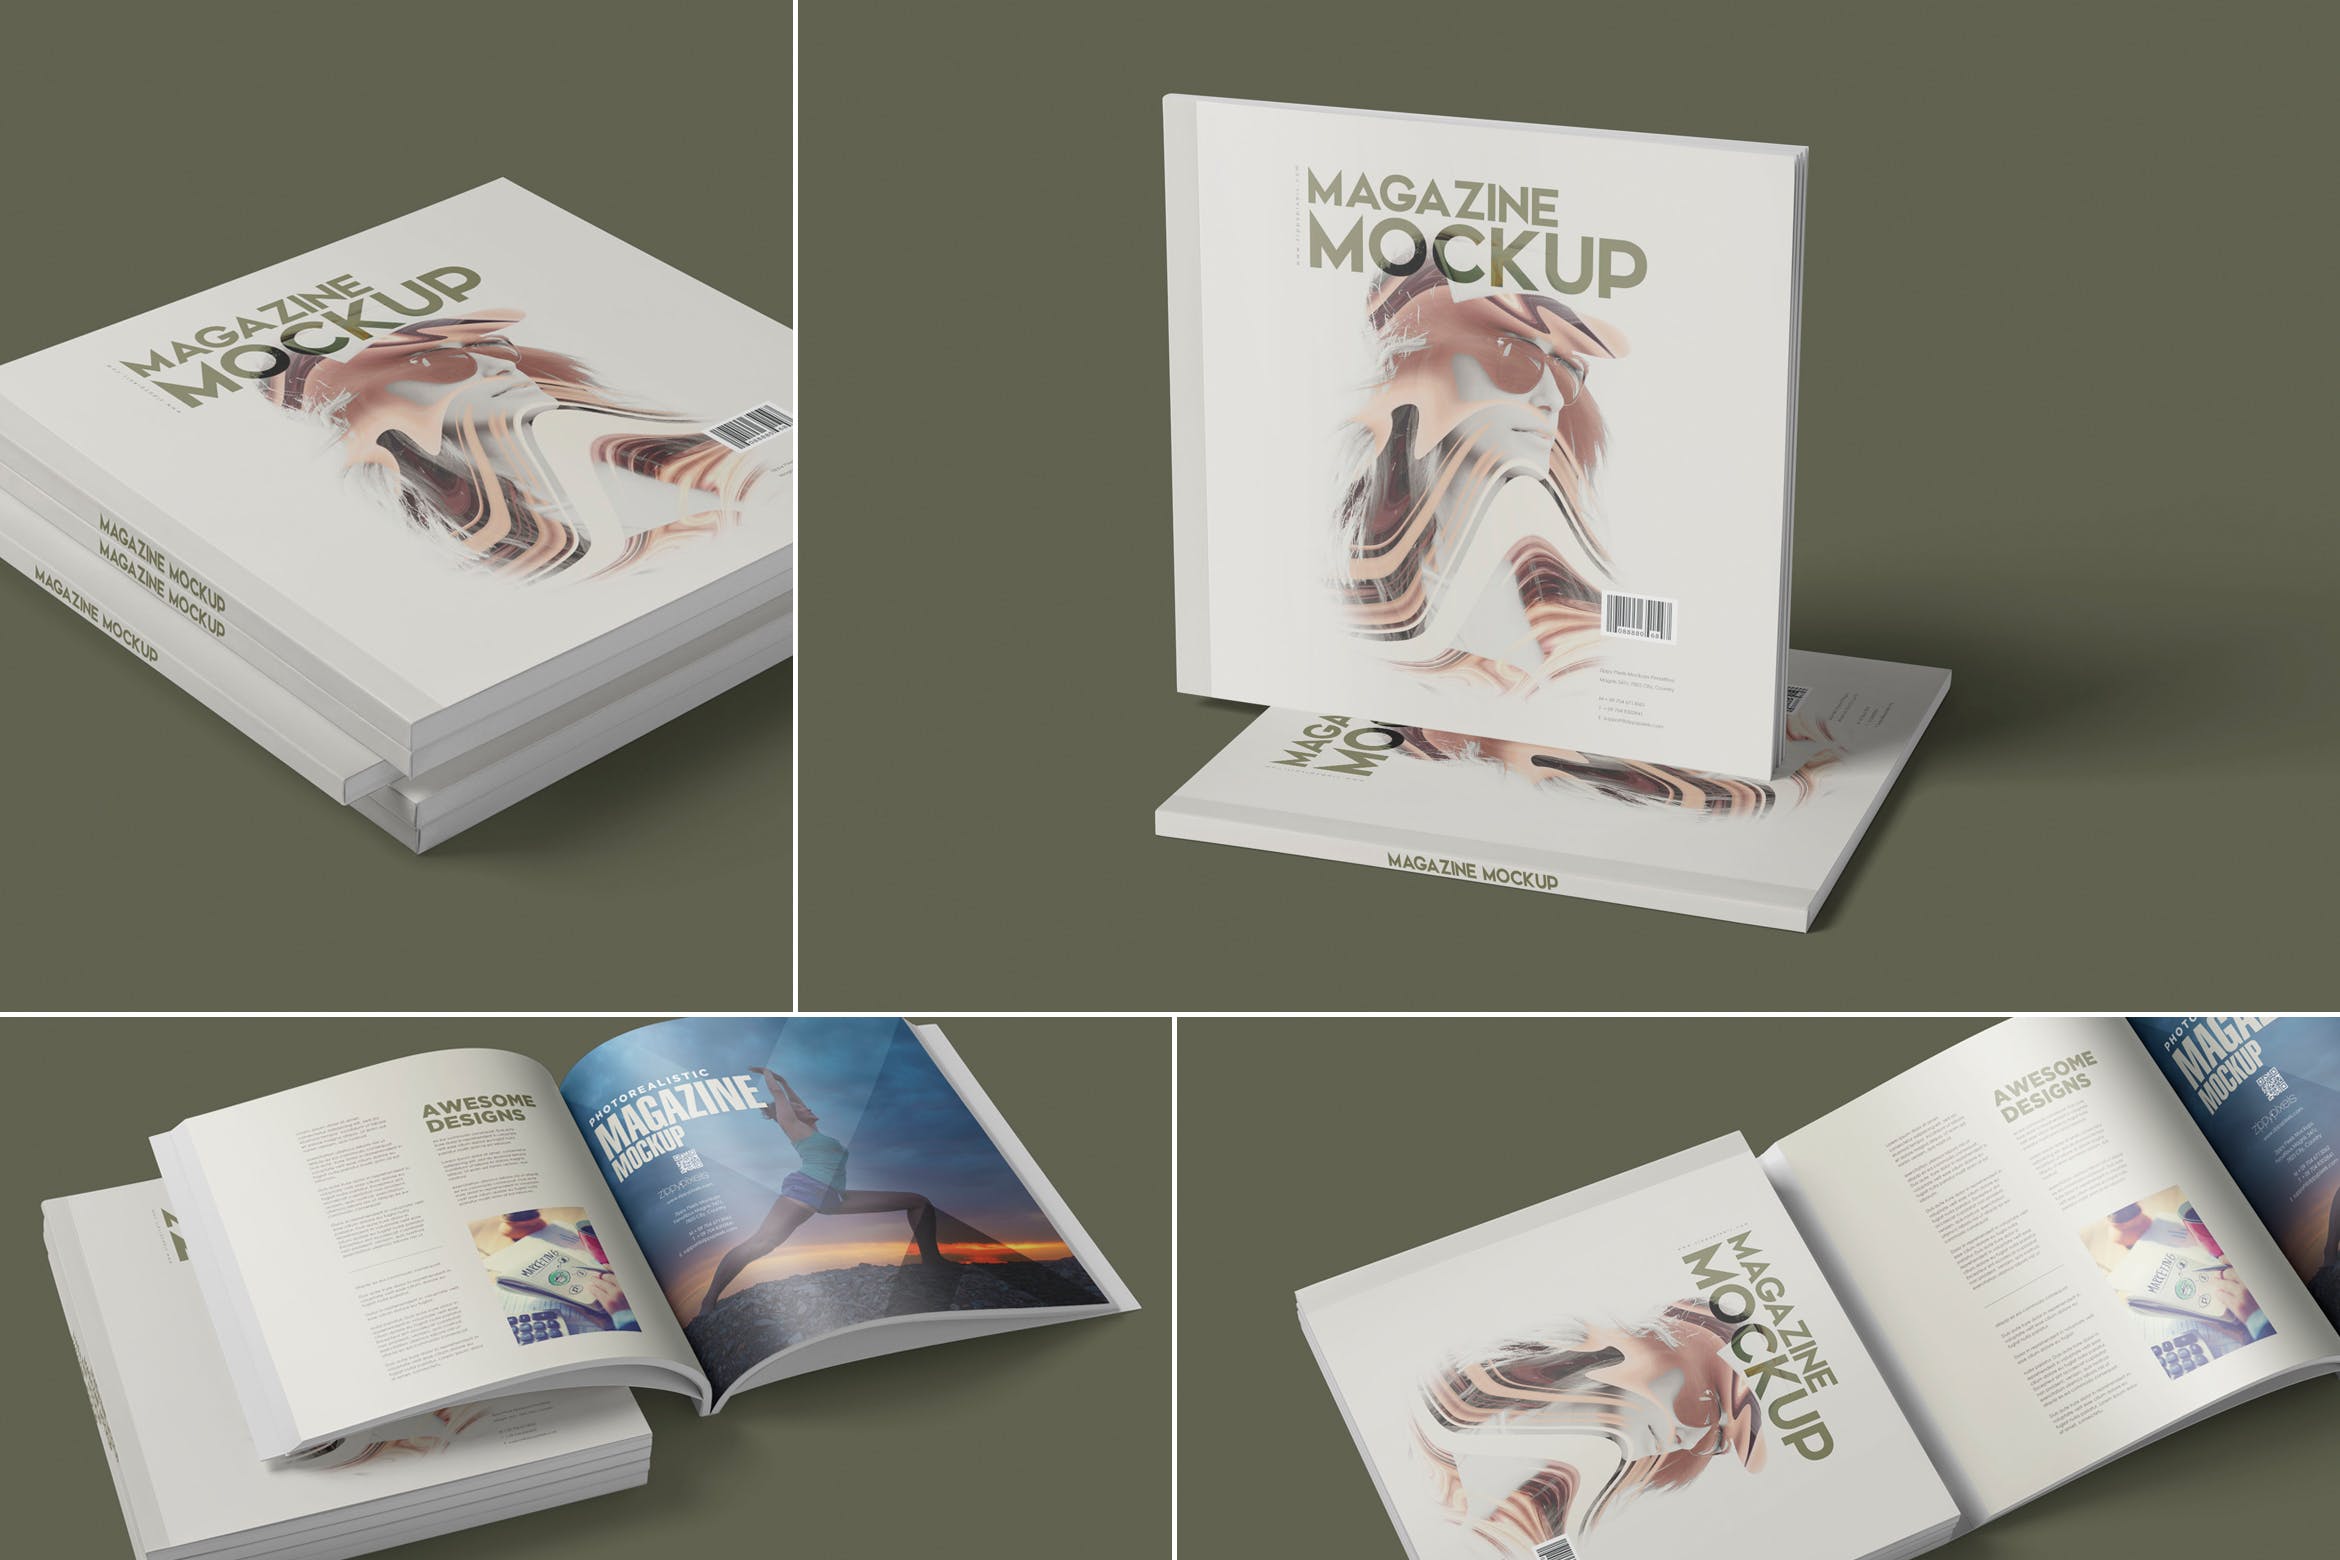 方形杂志印刷效果图样机第一素材精选PSD模板 Square Magazine Mockup Set插图